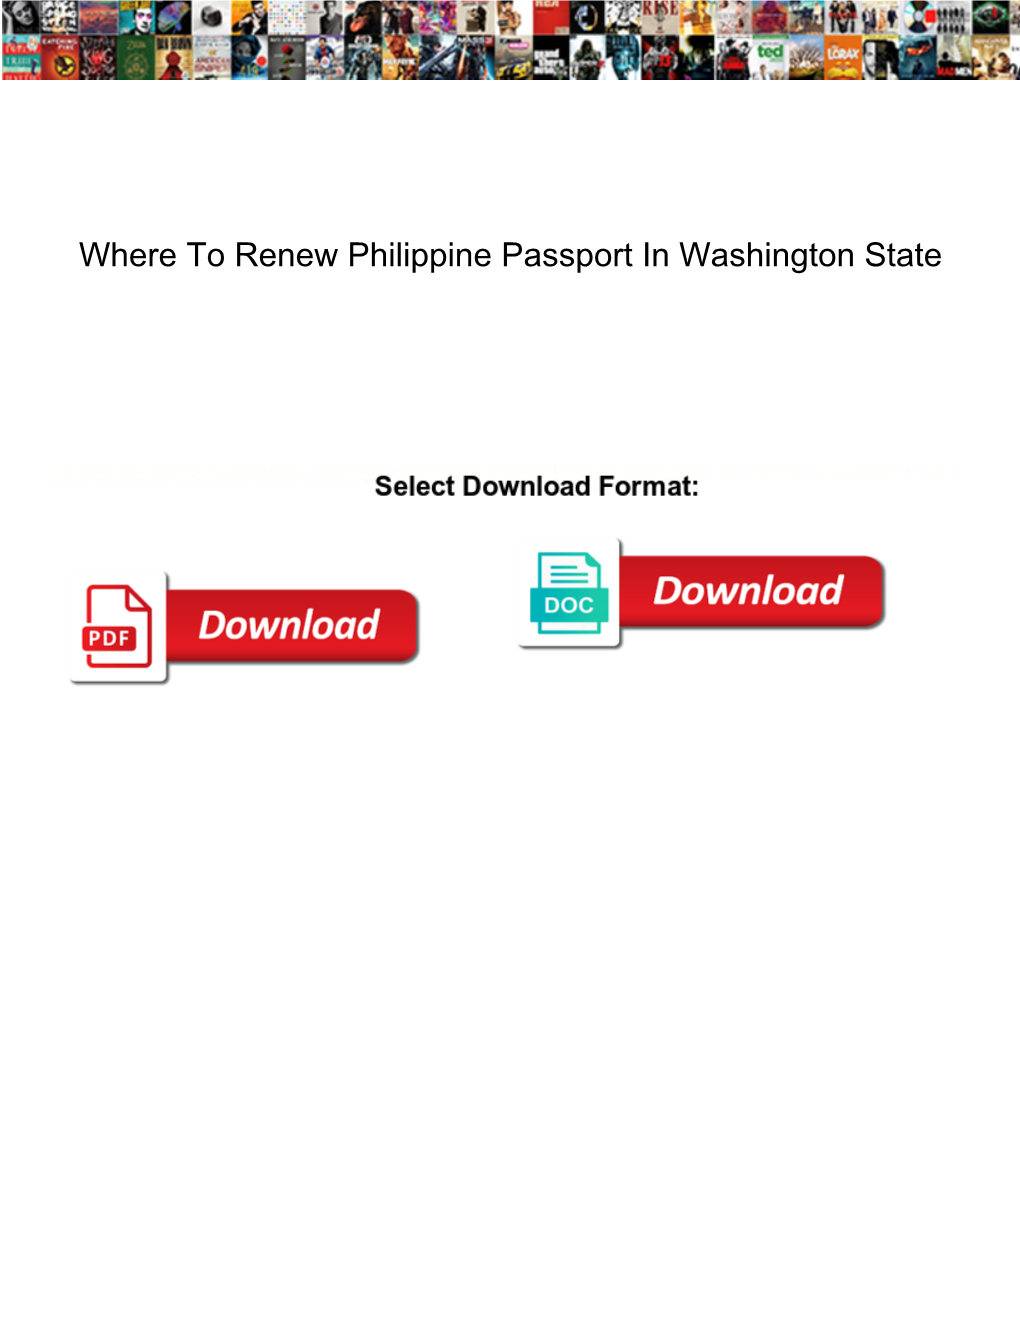 Where to Renew Philippine Passport in Washington State